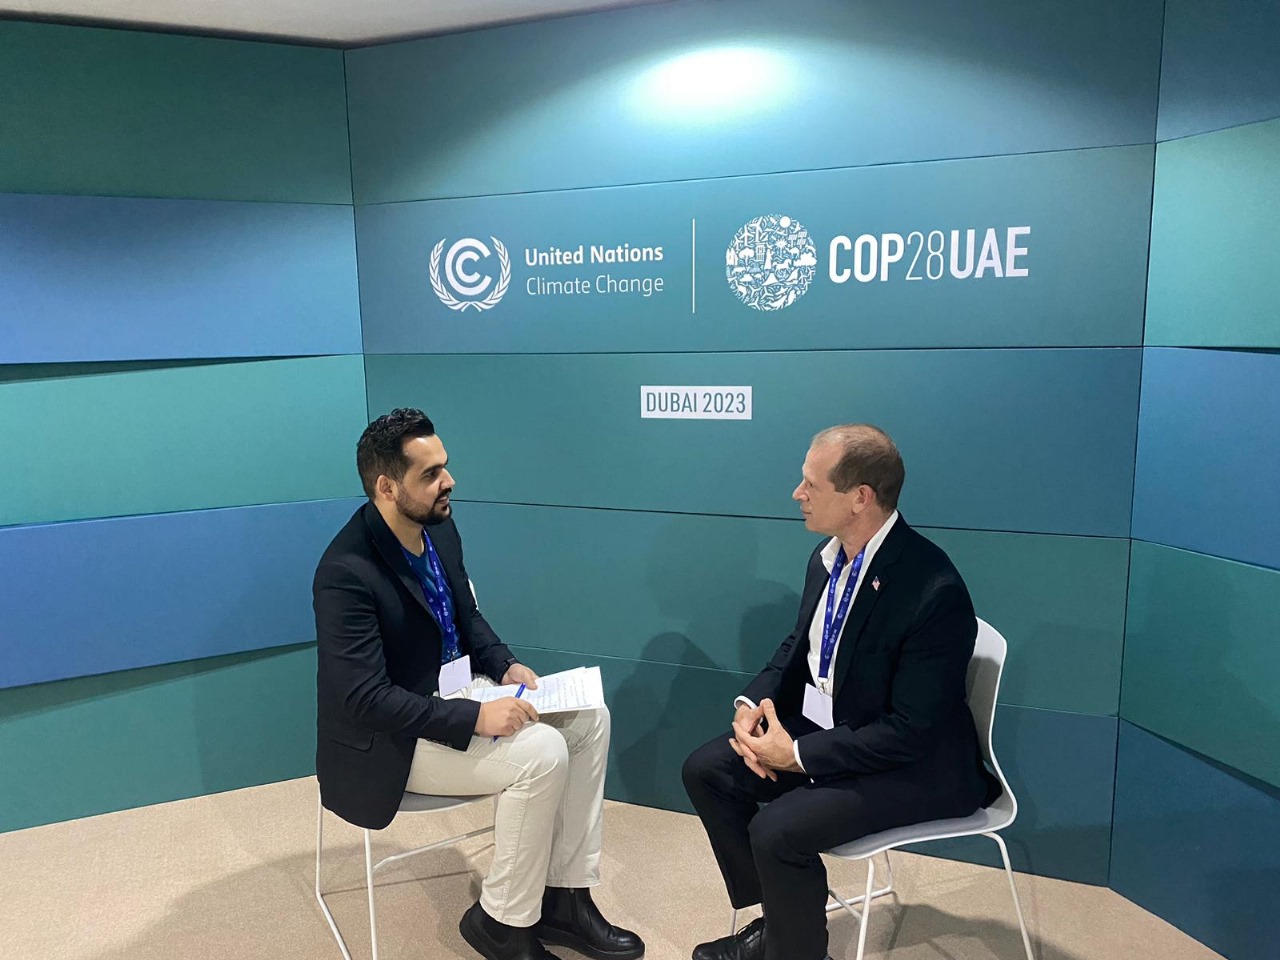  ويربيرج: نرحب بالمبادرات التي أطلقها الأردن في مؤتمر المناخ المنعقد في دبي